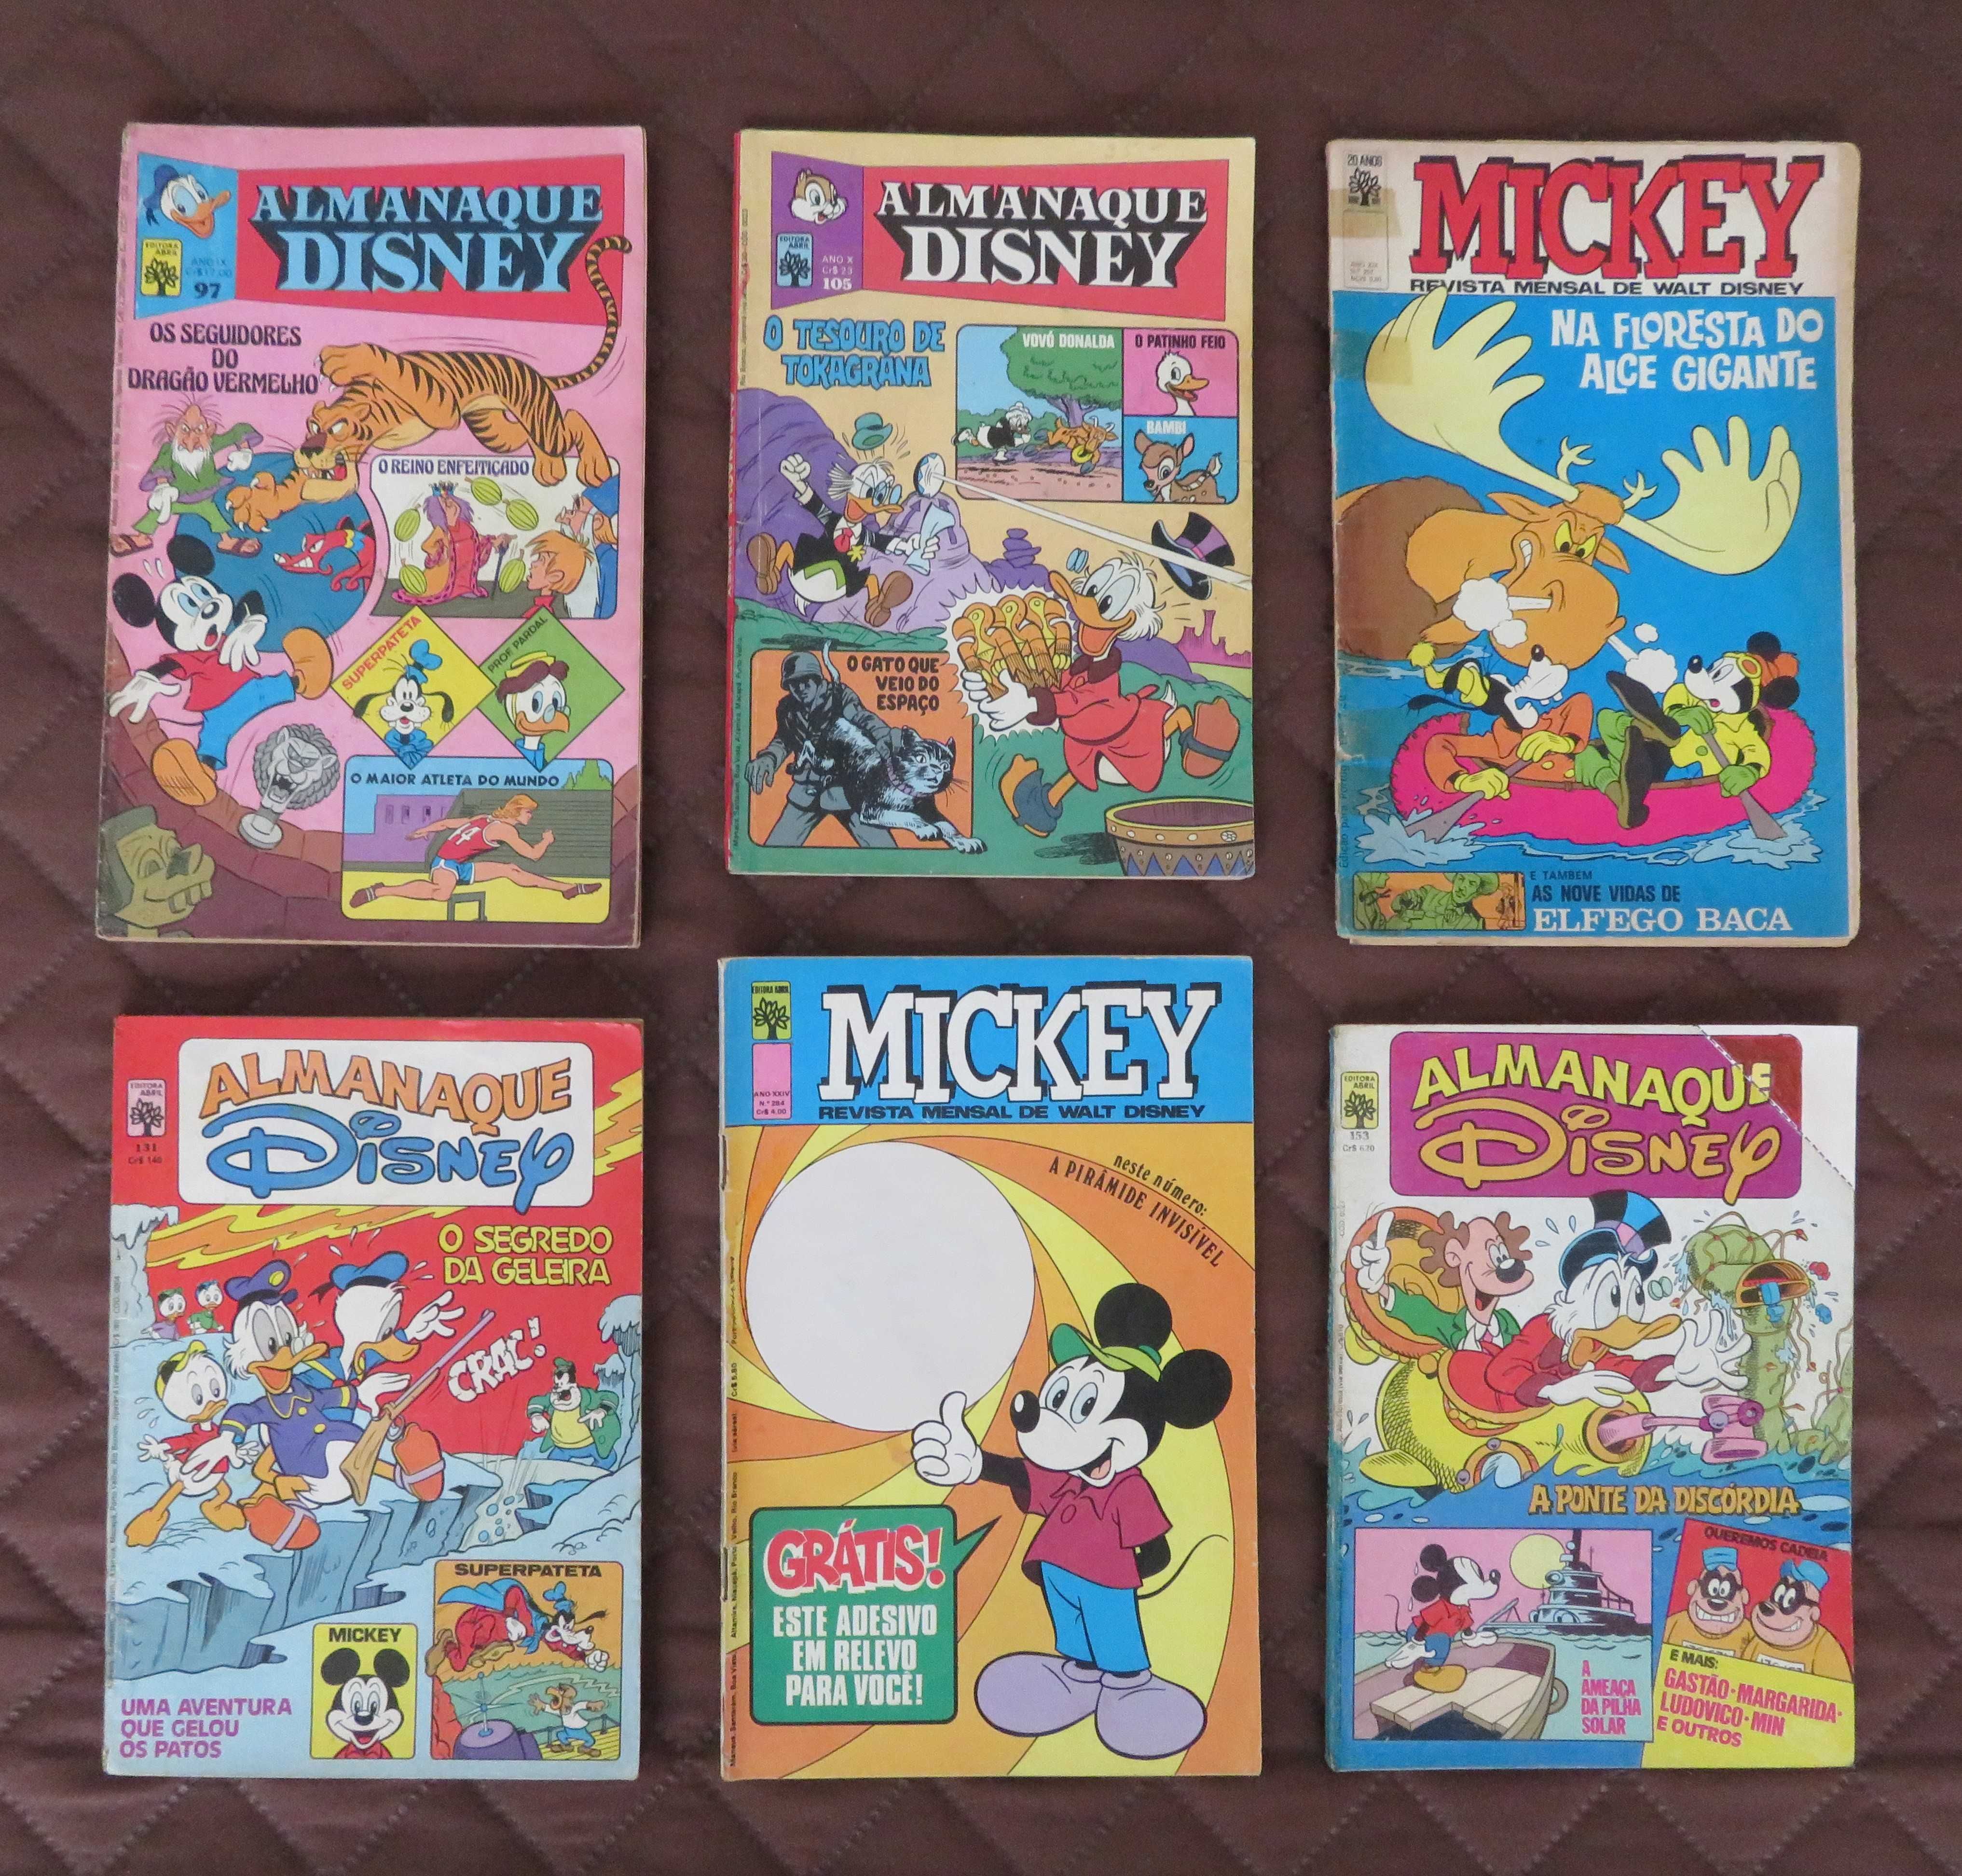 BD - Revistas Antigas DISNEY (Almanaque + Mickey) com OFERTA